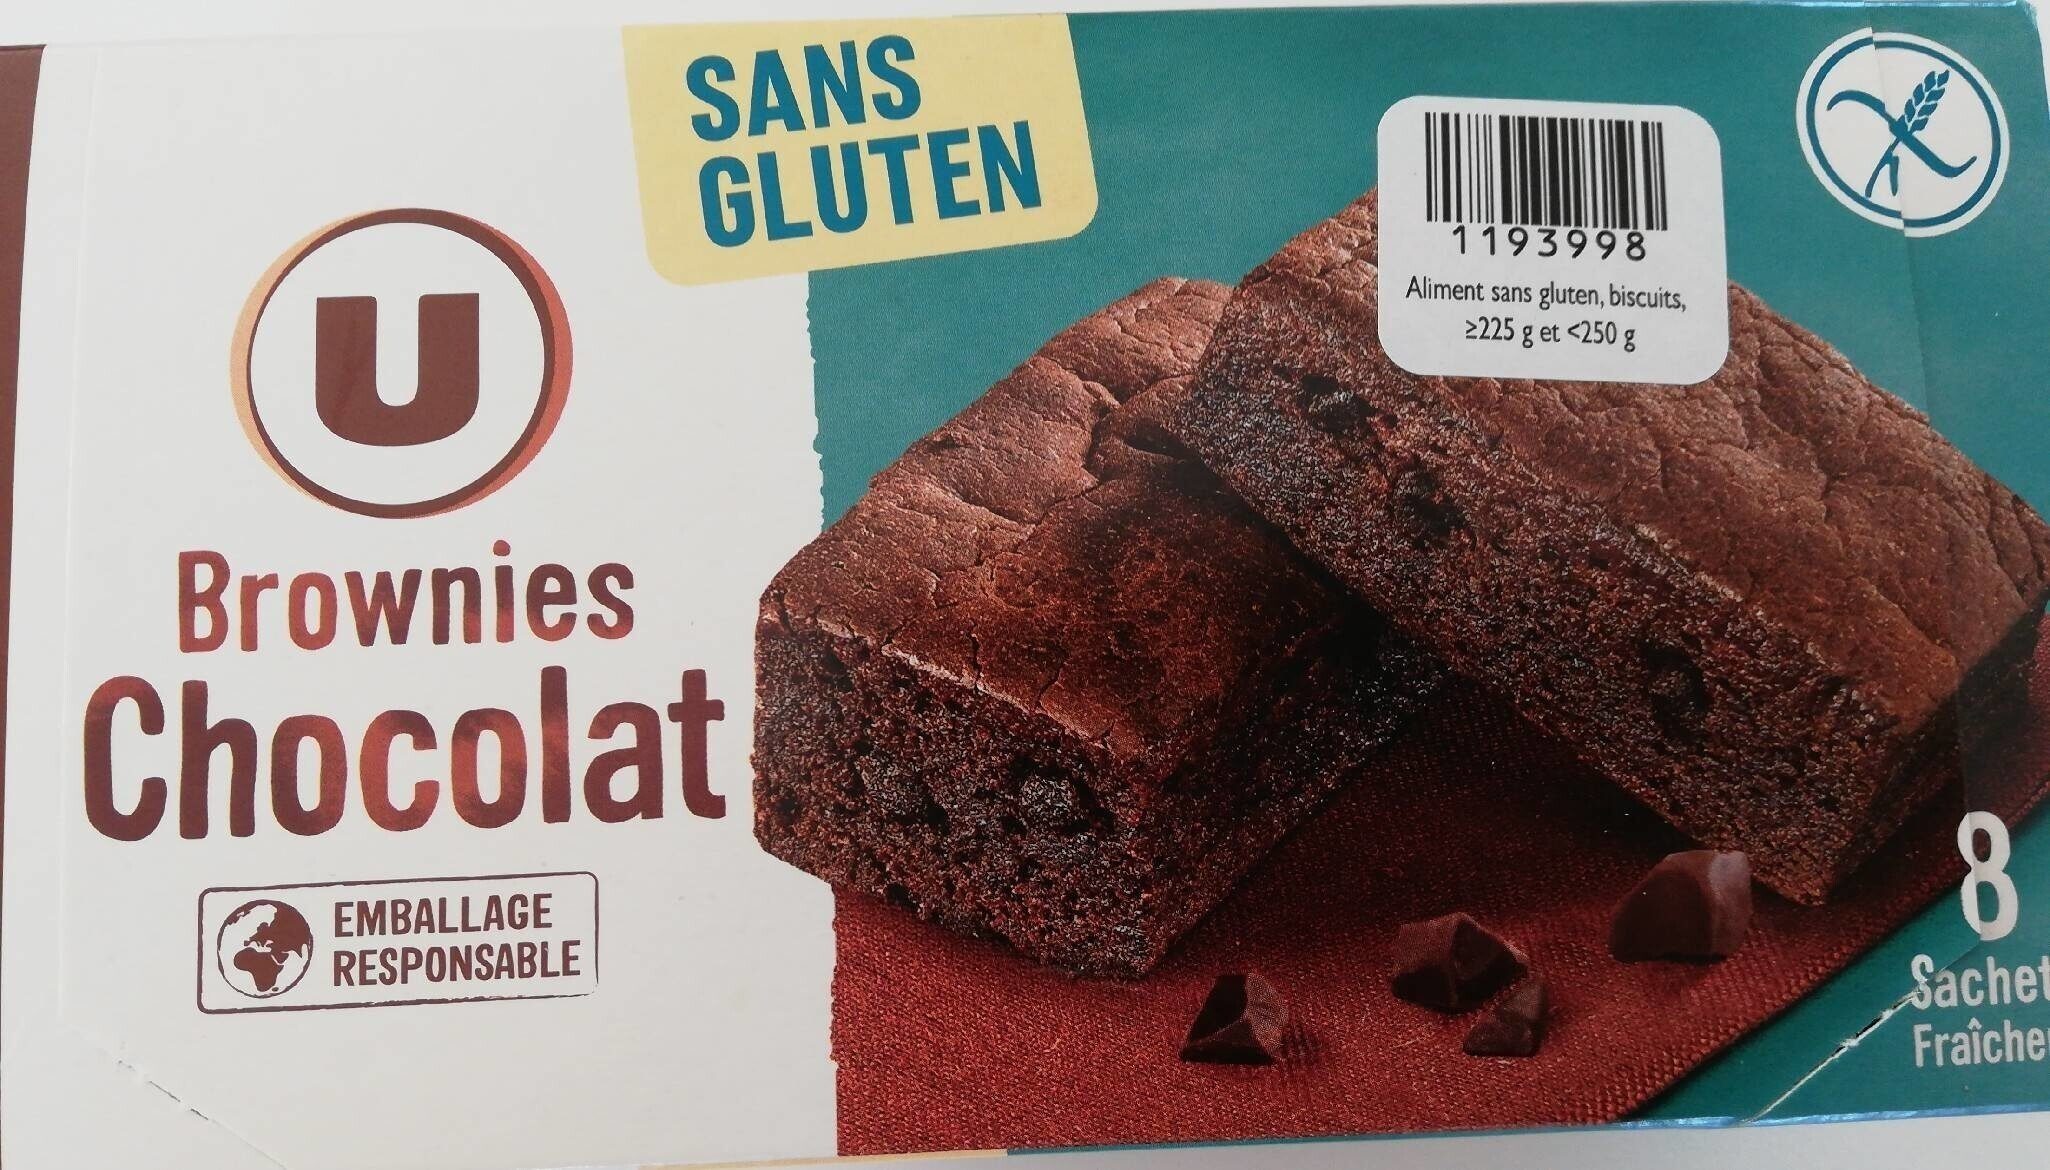 Brownie chocolat sans gluten - Produit